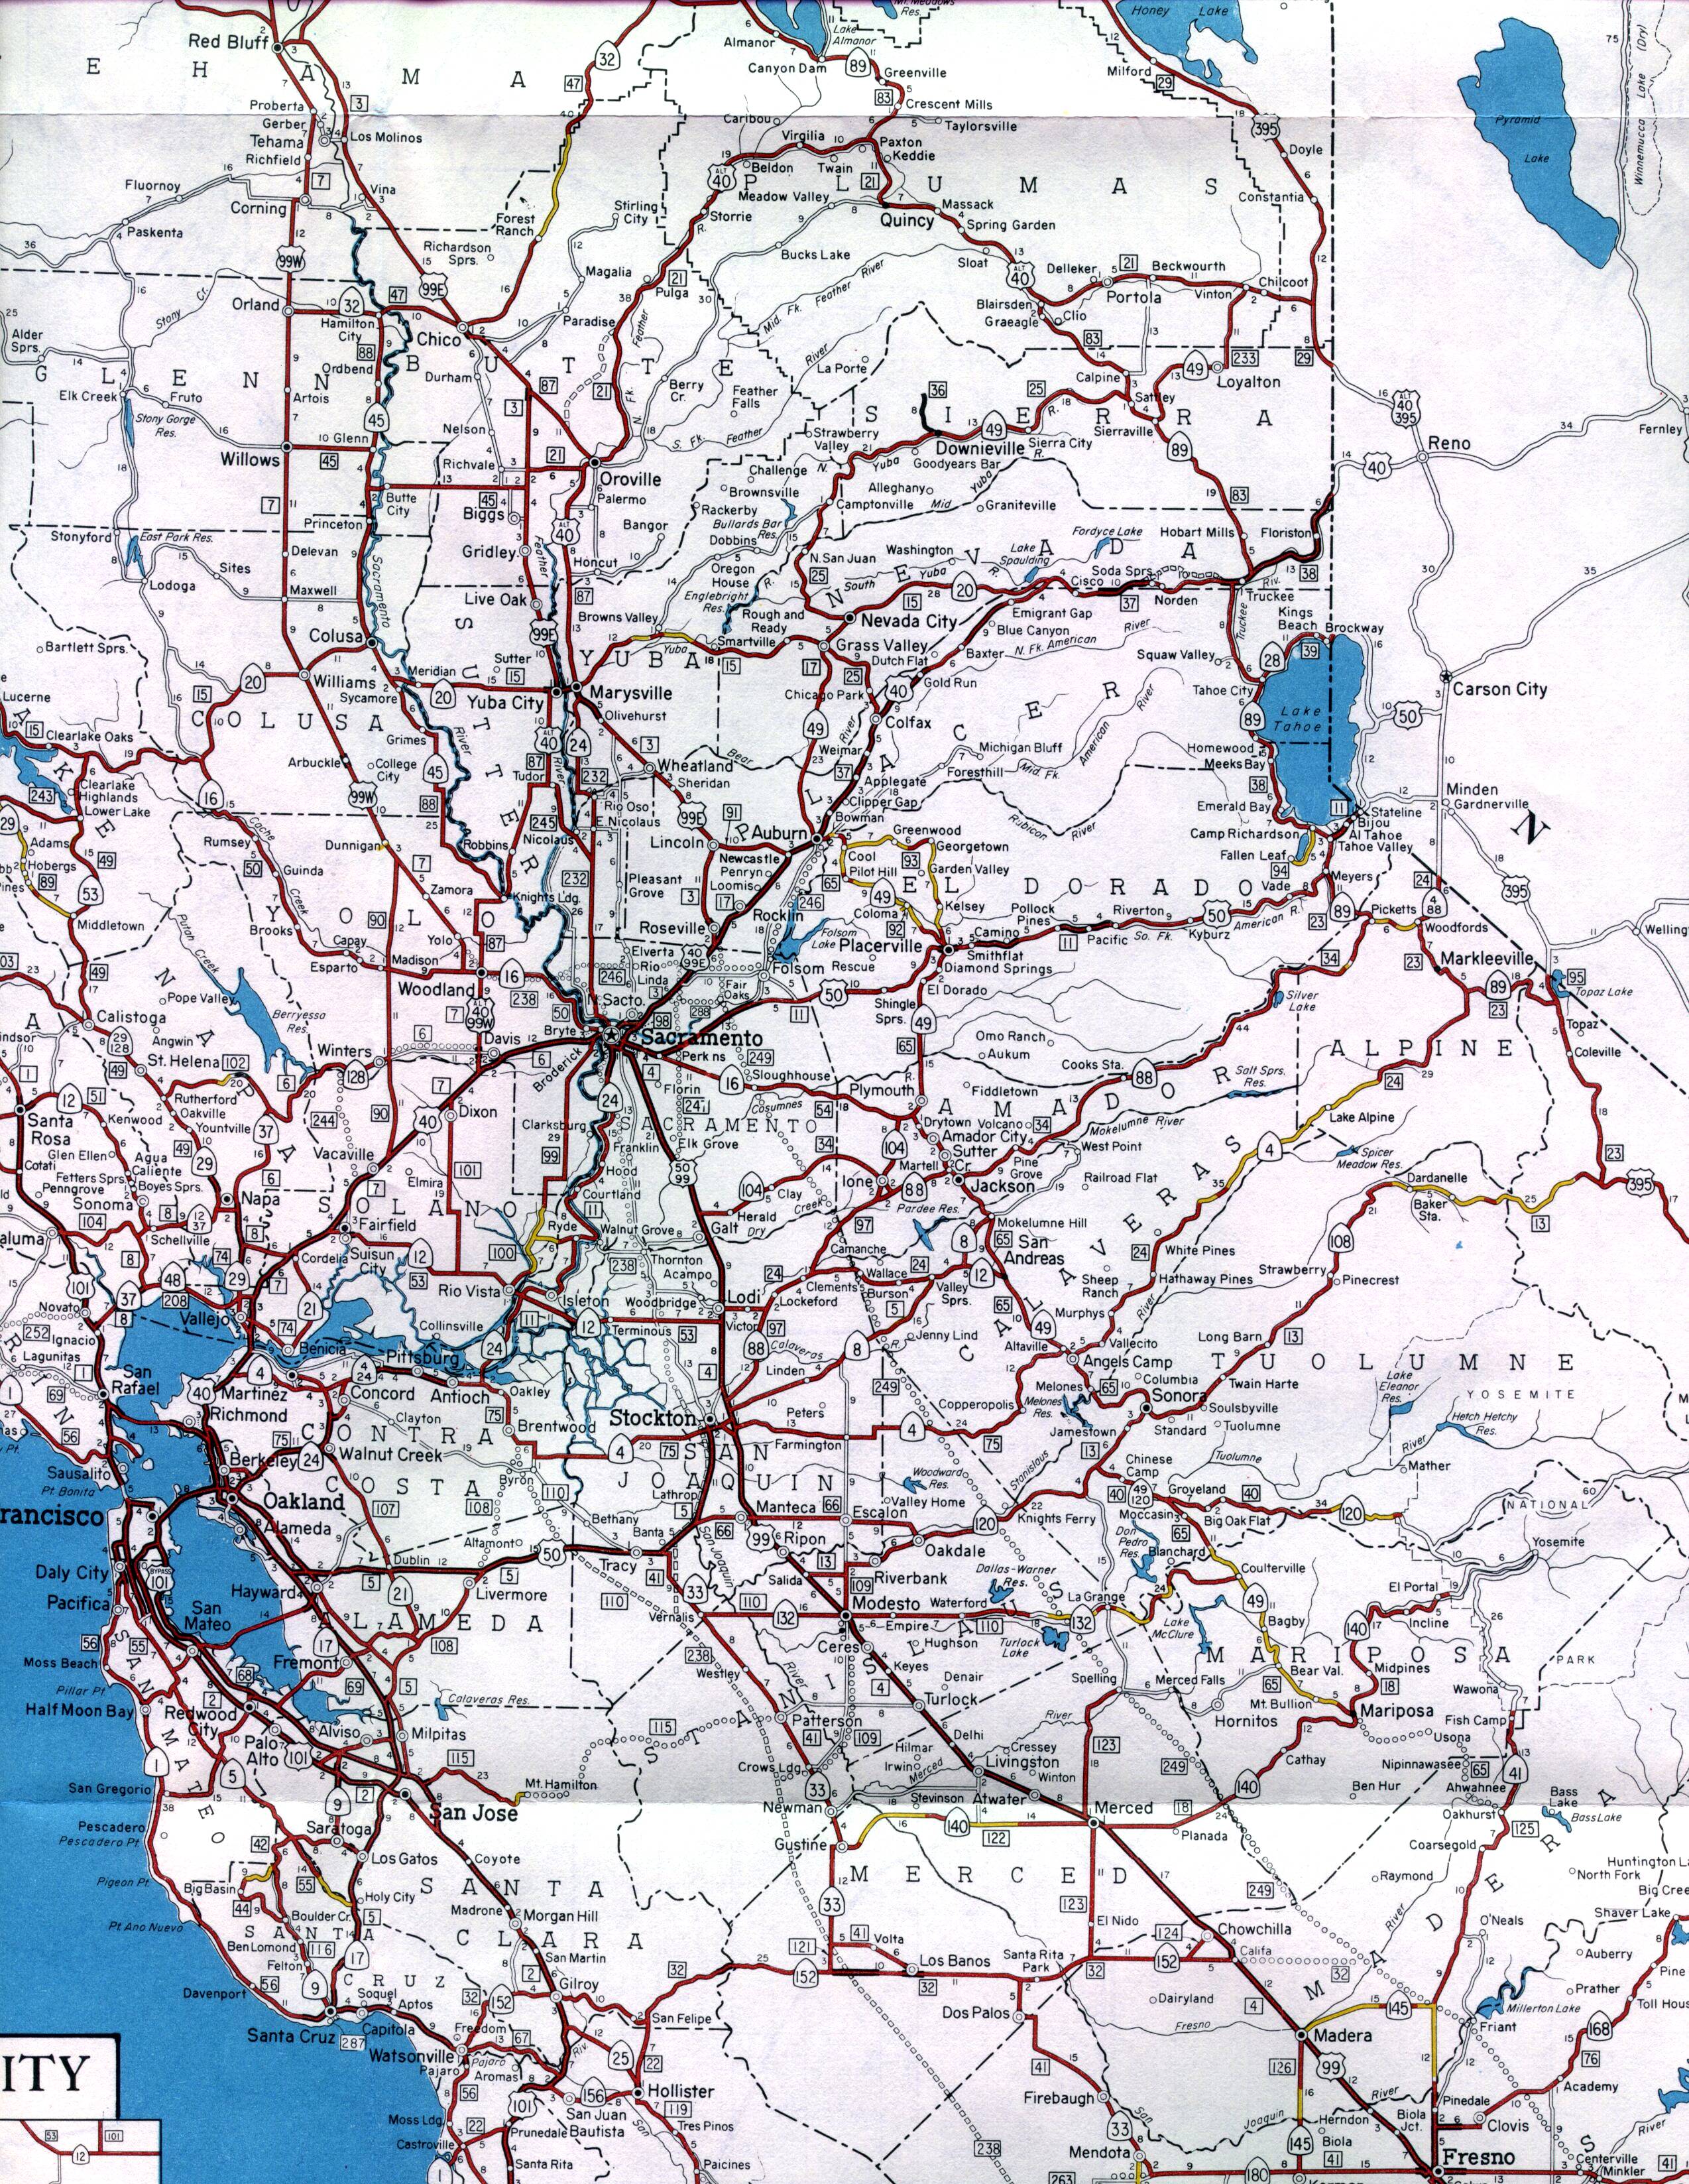 Central regions of California around Sacramento (1961 official map)